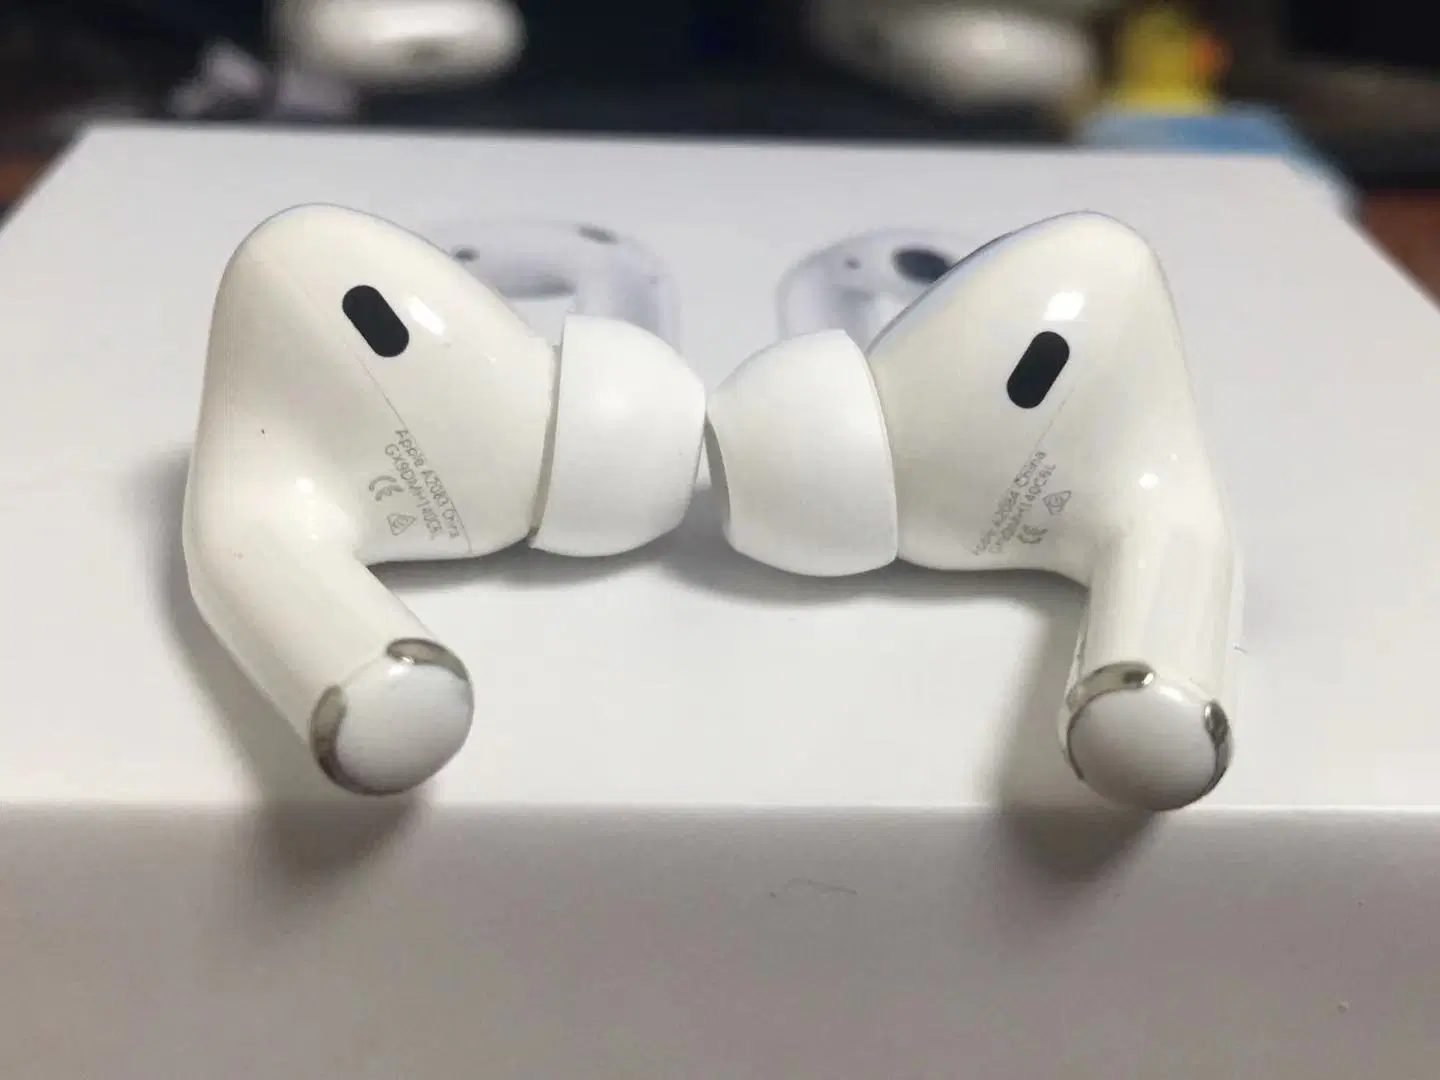 Auricular inalámbrico Bluetooth PRO auriculares auriculares auriculares auriculares auriculares auriculares con reducción activa de ruido 1562 Chip y número de serie válido